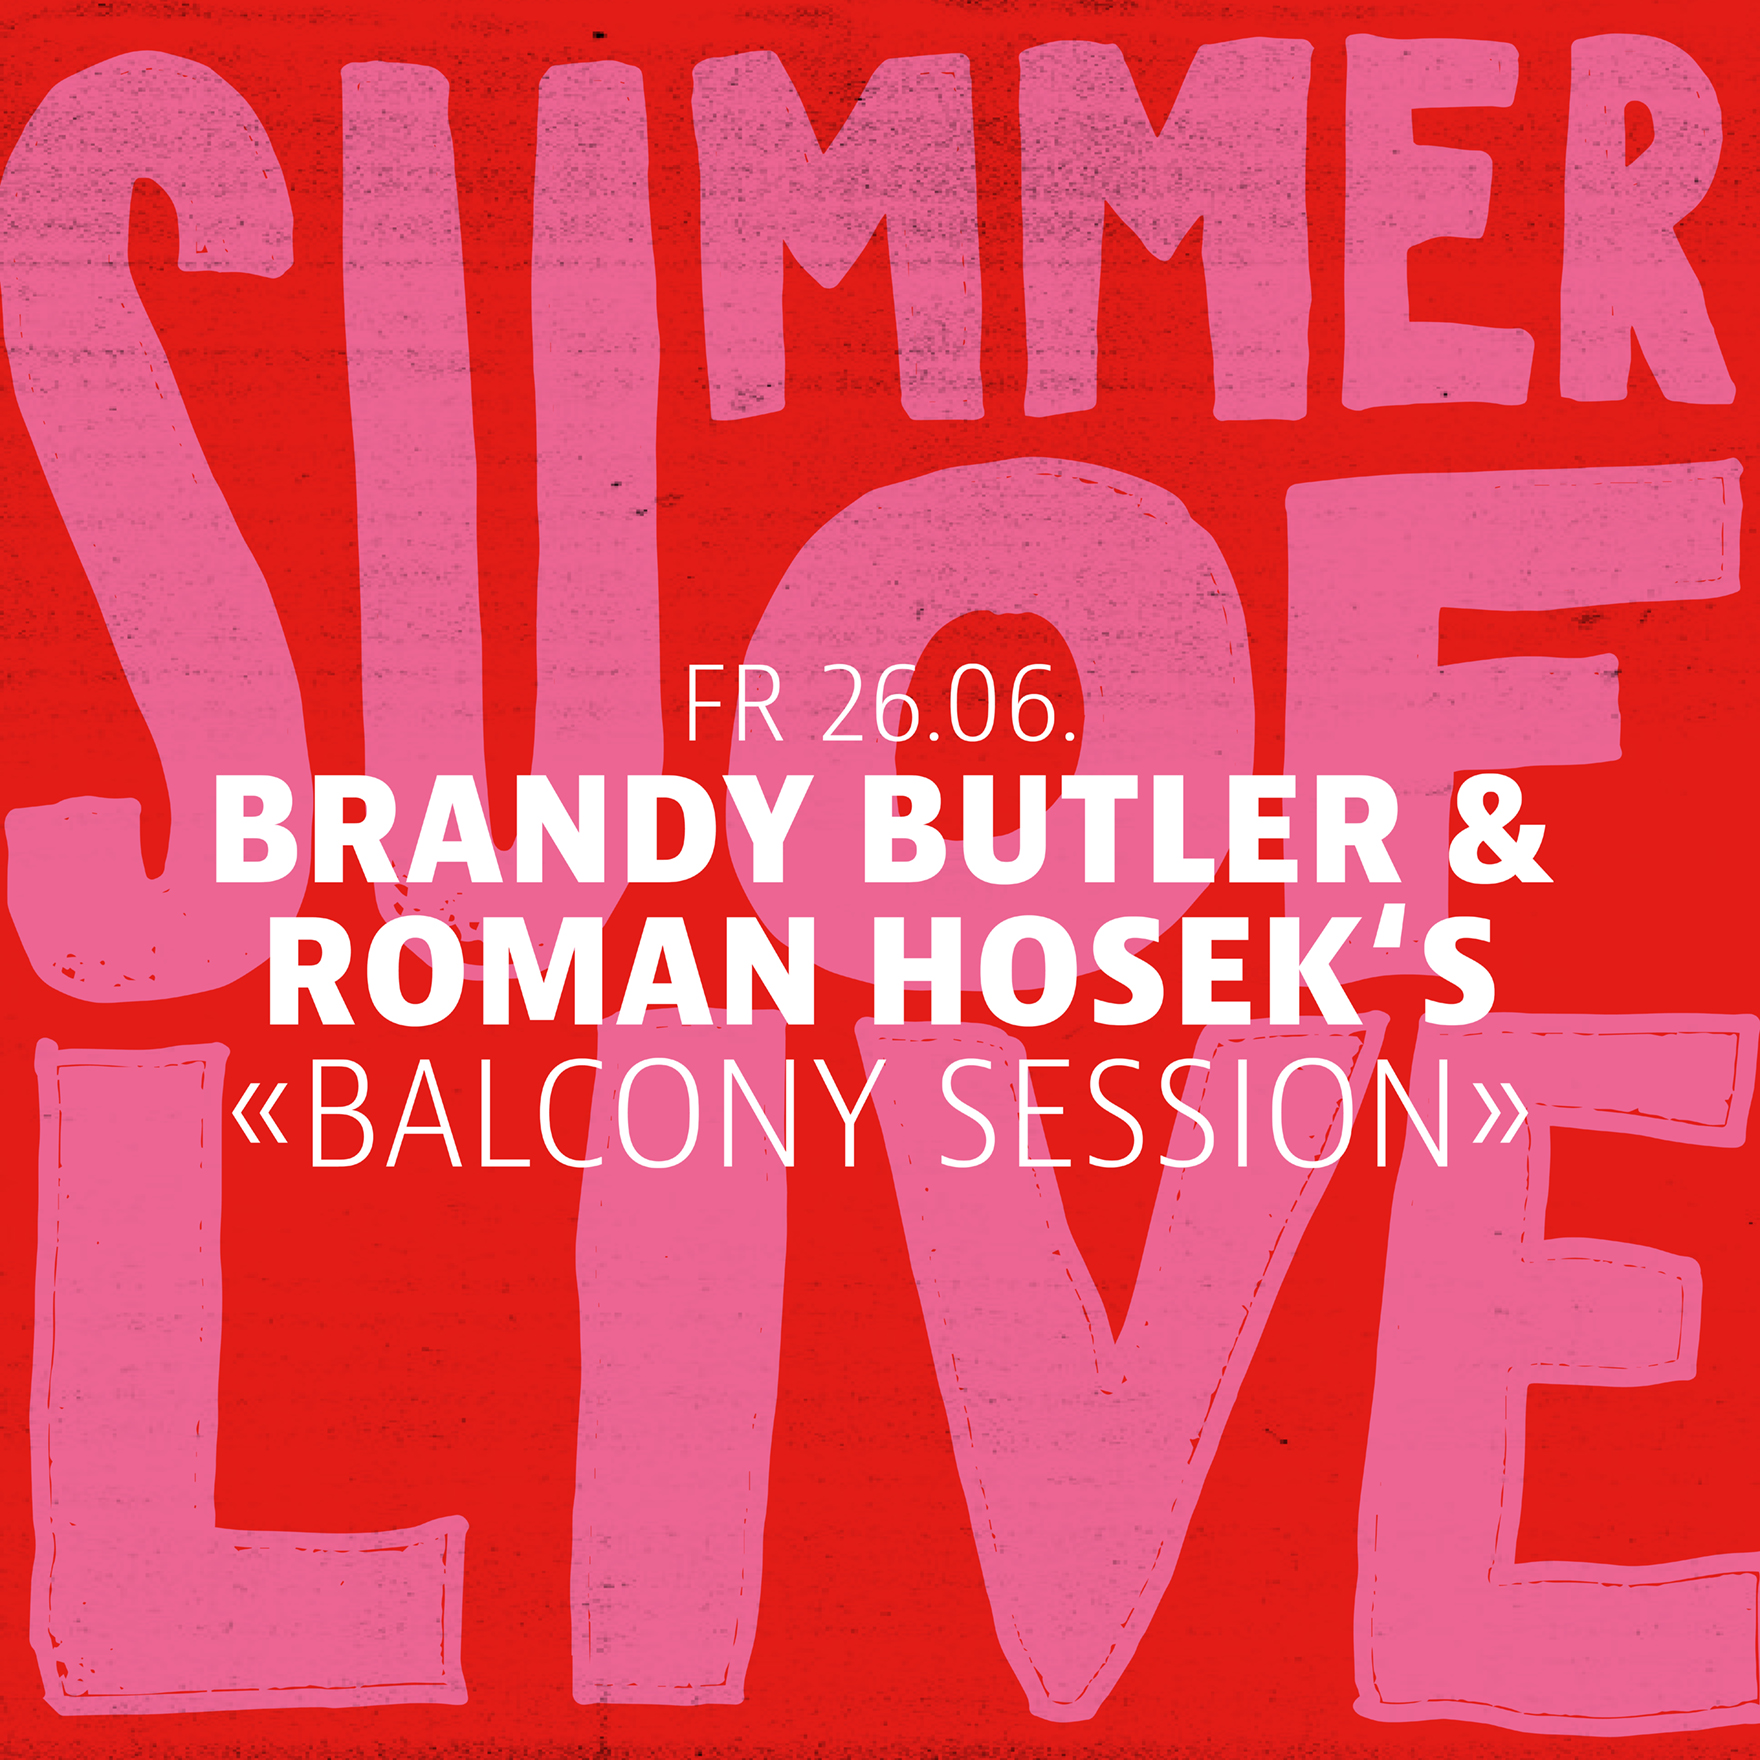 Brandy Butler & Roman Hosek's «Balcony Session»